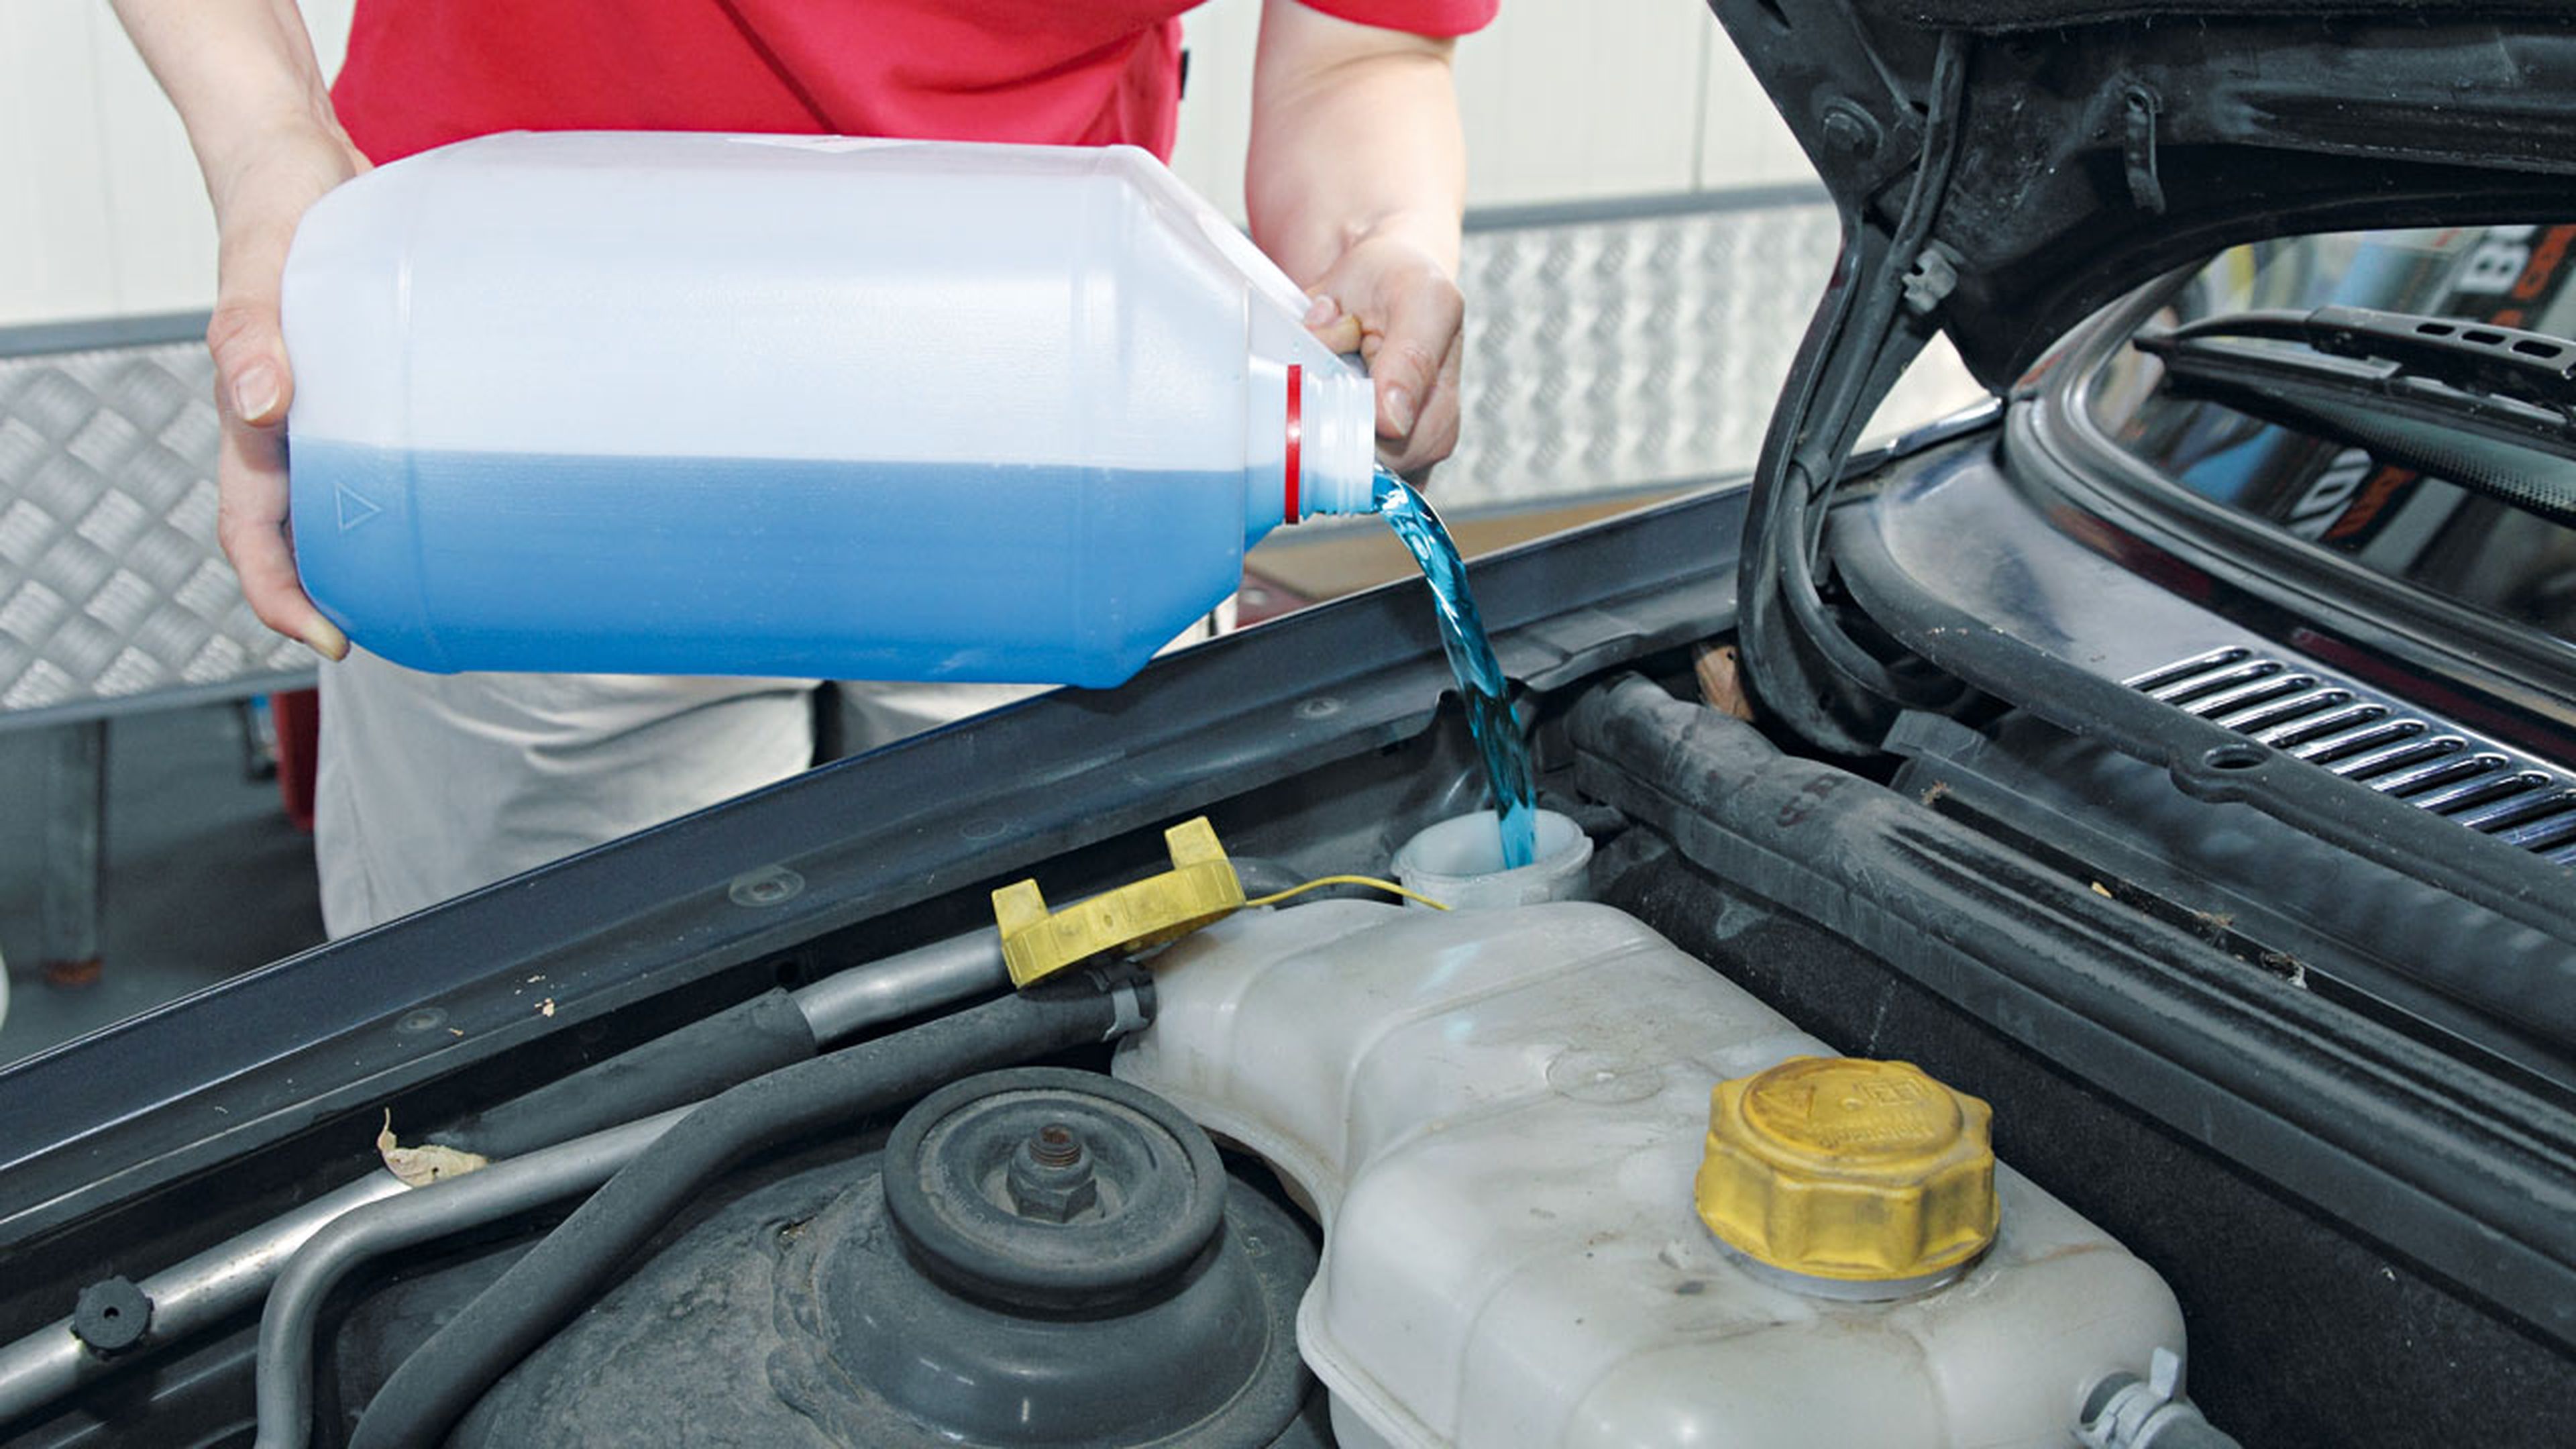 Cómo cambiar el líquido refrigerante del coche